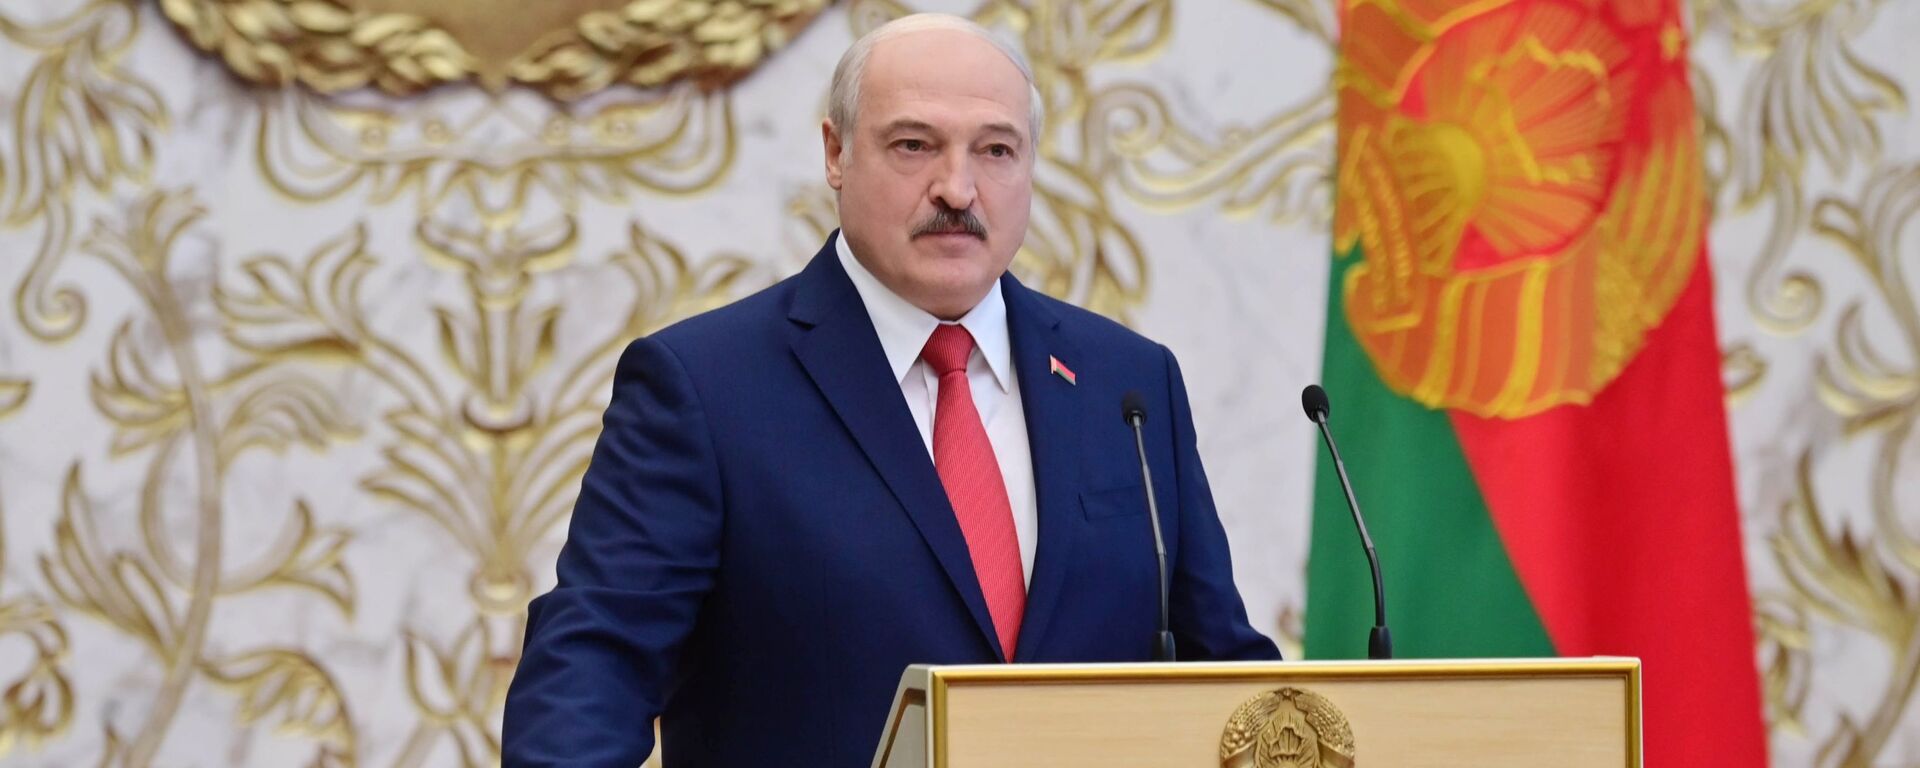 تنصيب الرئيس البيلاروسي ألكسندر لوكاشينكو، ميسنك، بيلاروسيا 23 سبتمبر 2020 - سبوتنيك عربي, 1920, 26.02.2021